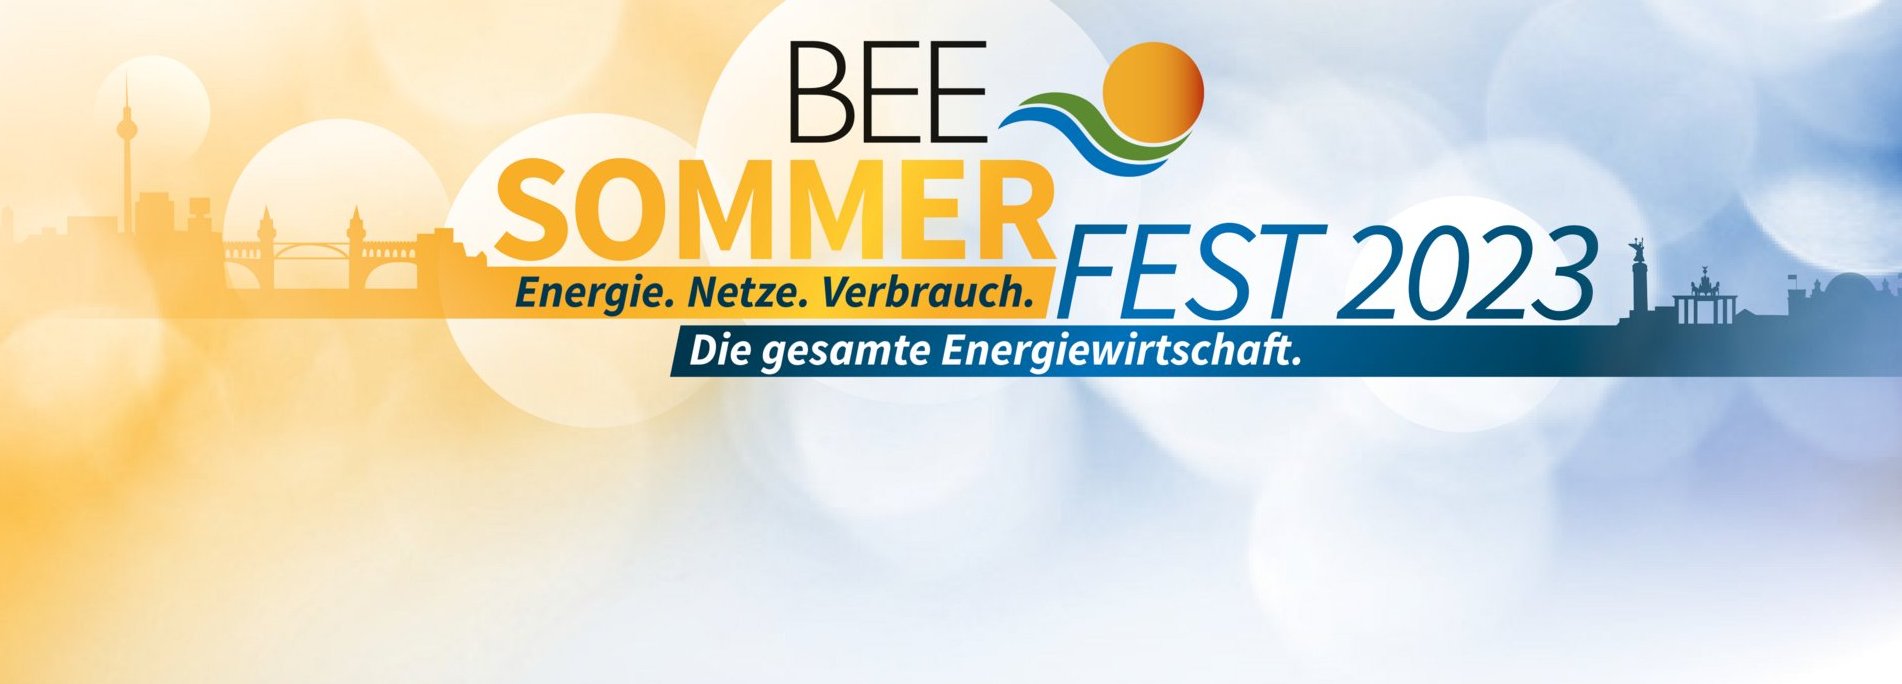 BEE Sommerfest 2023 Logo